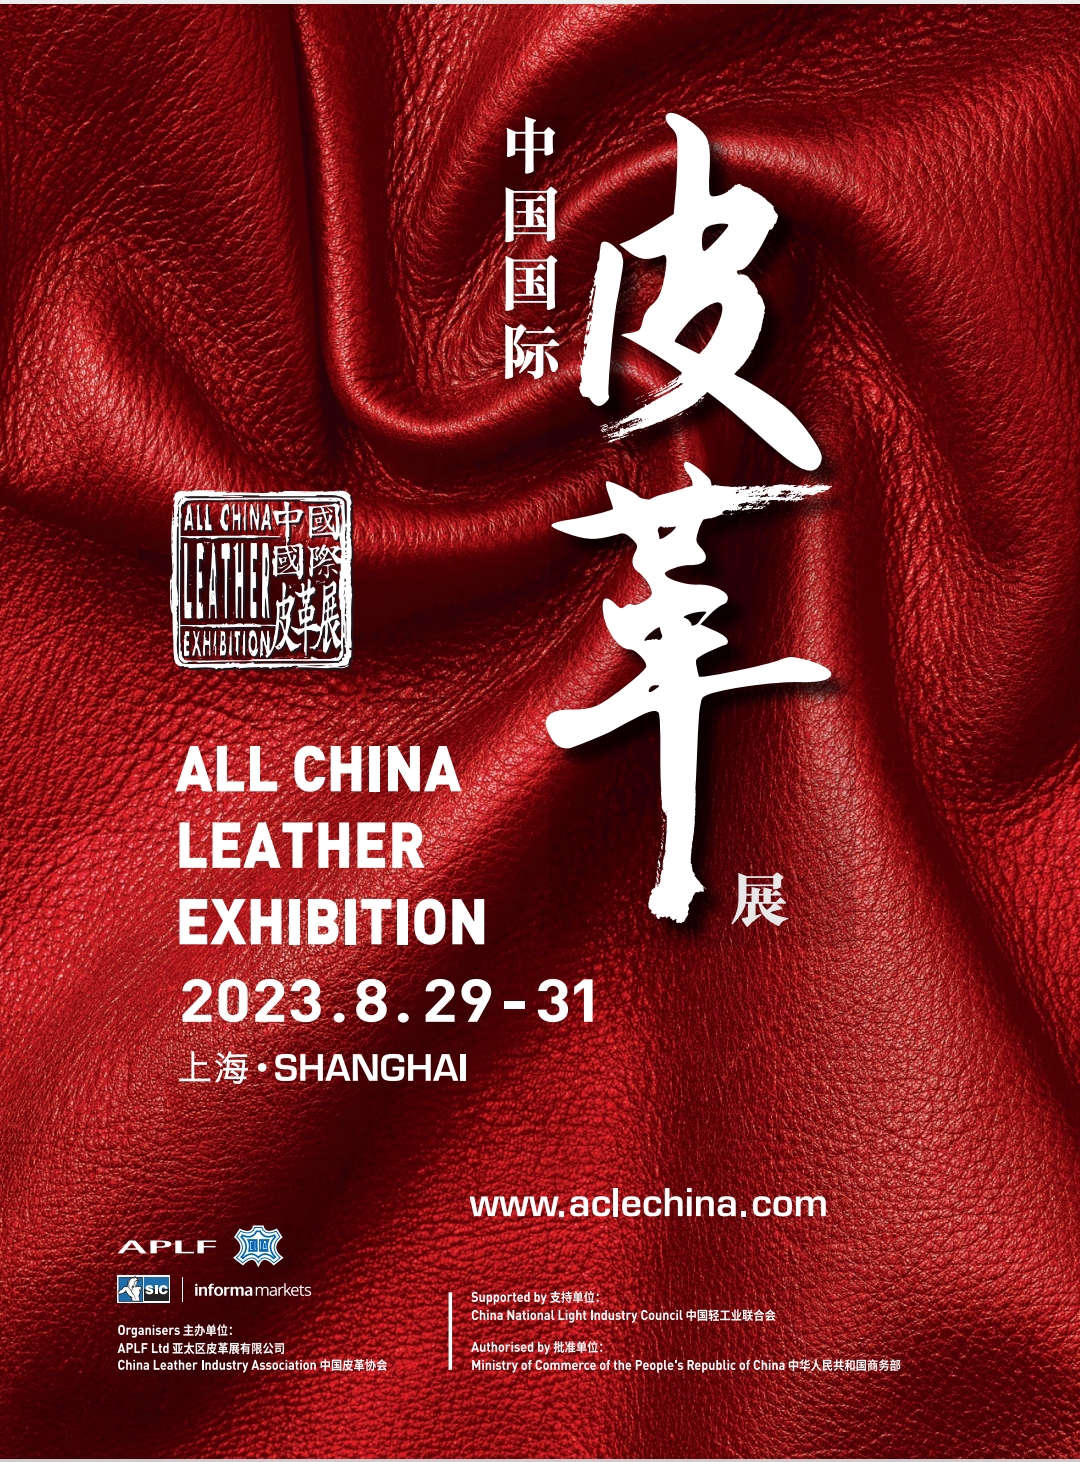 秋冬面料展 中国国际皮革展 中国香港亚太皮革展